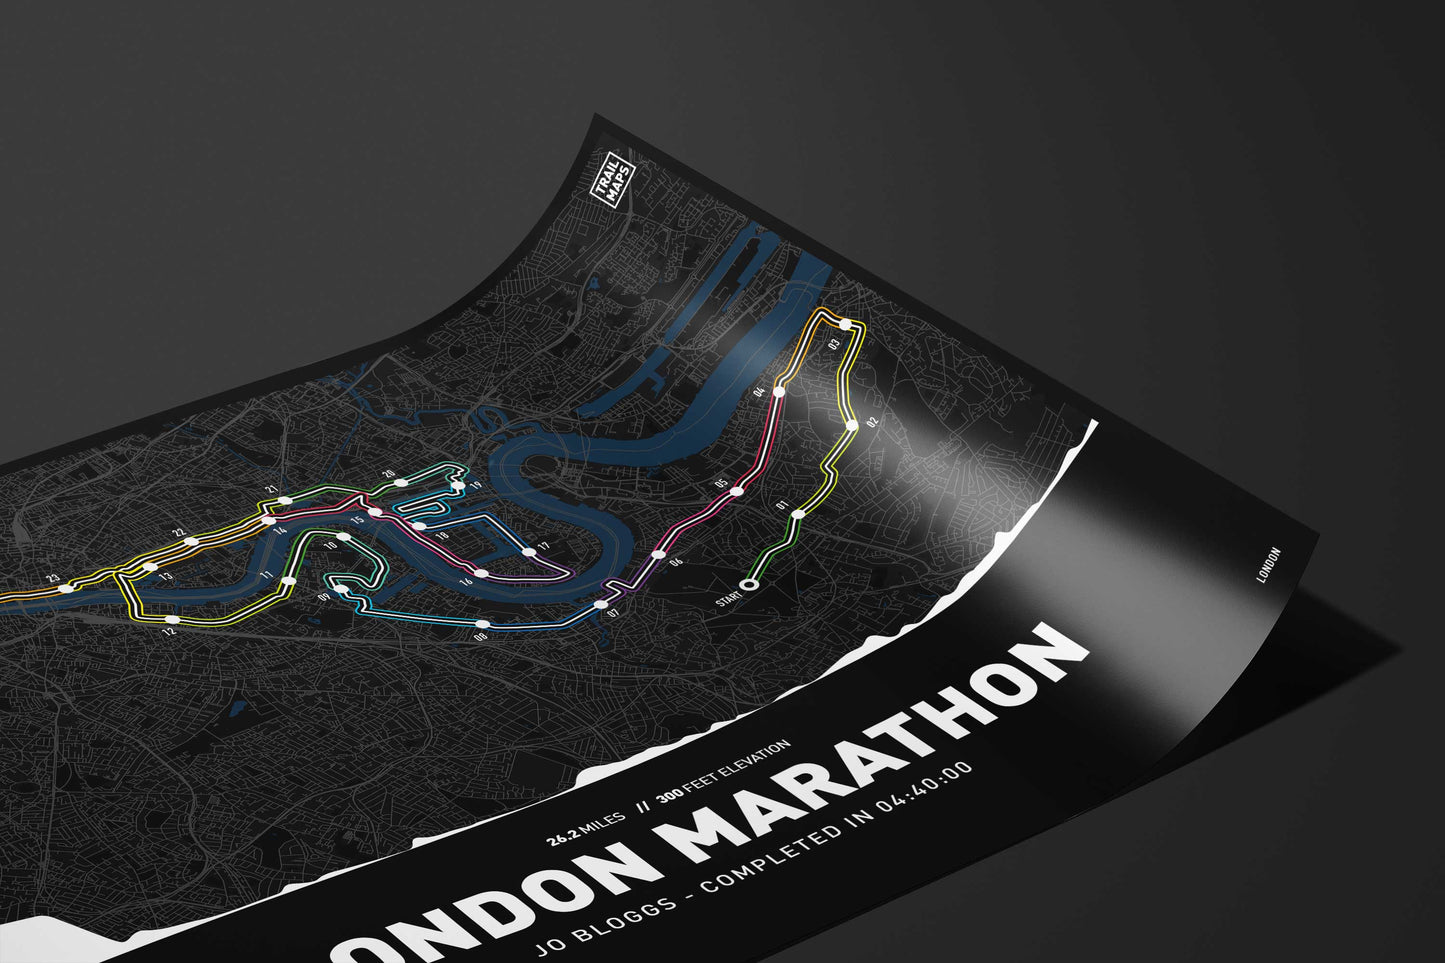 London Marathon Personalised Art Print